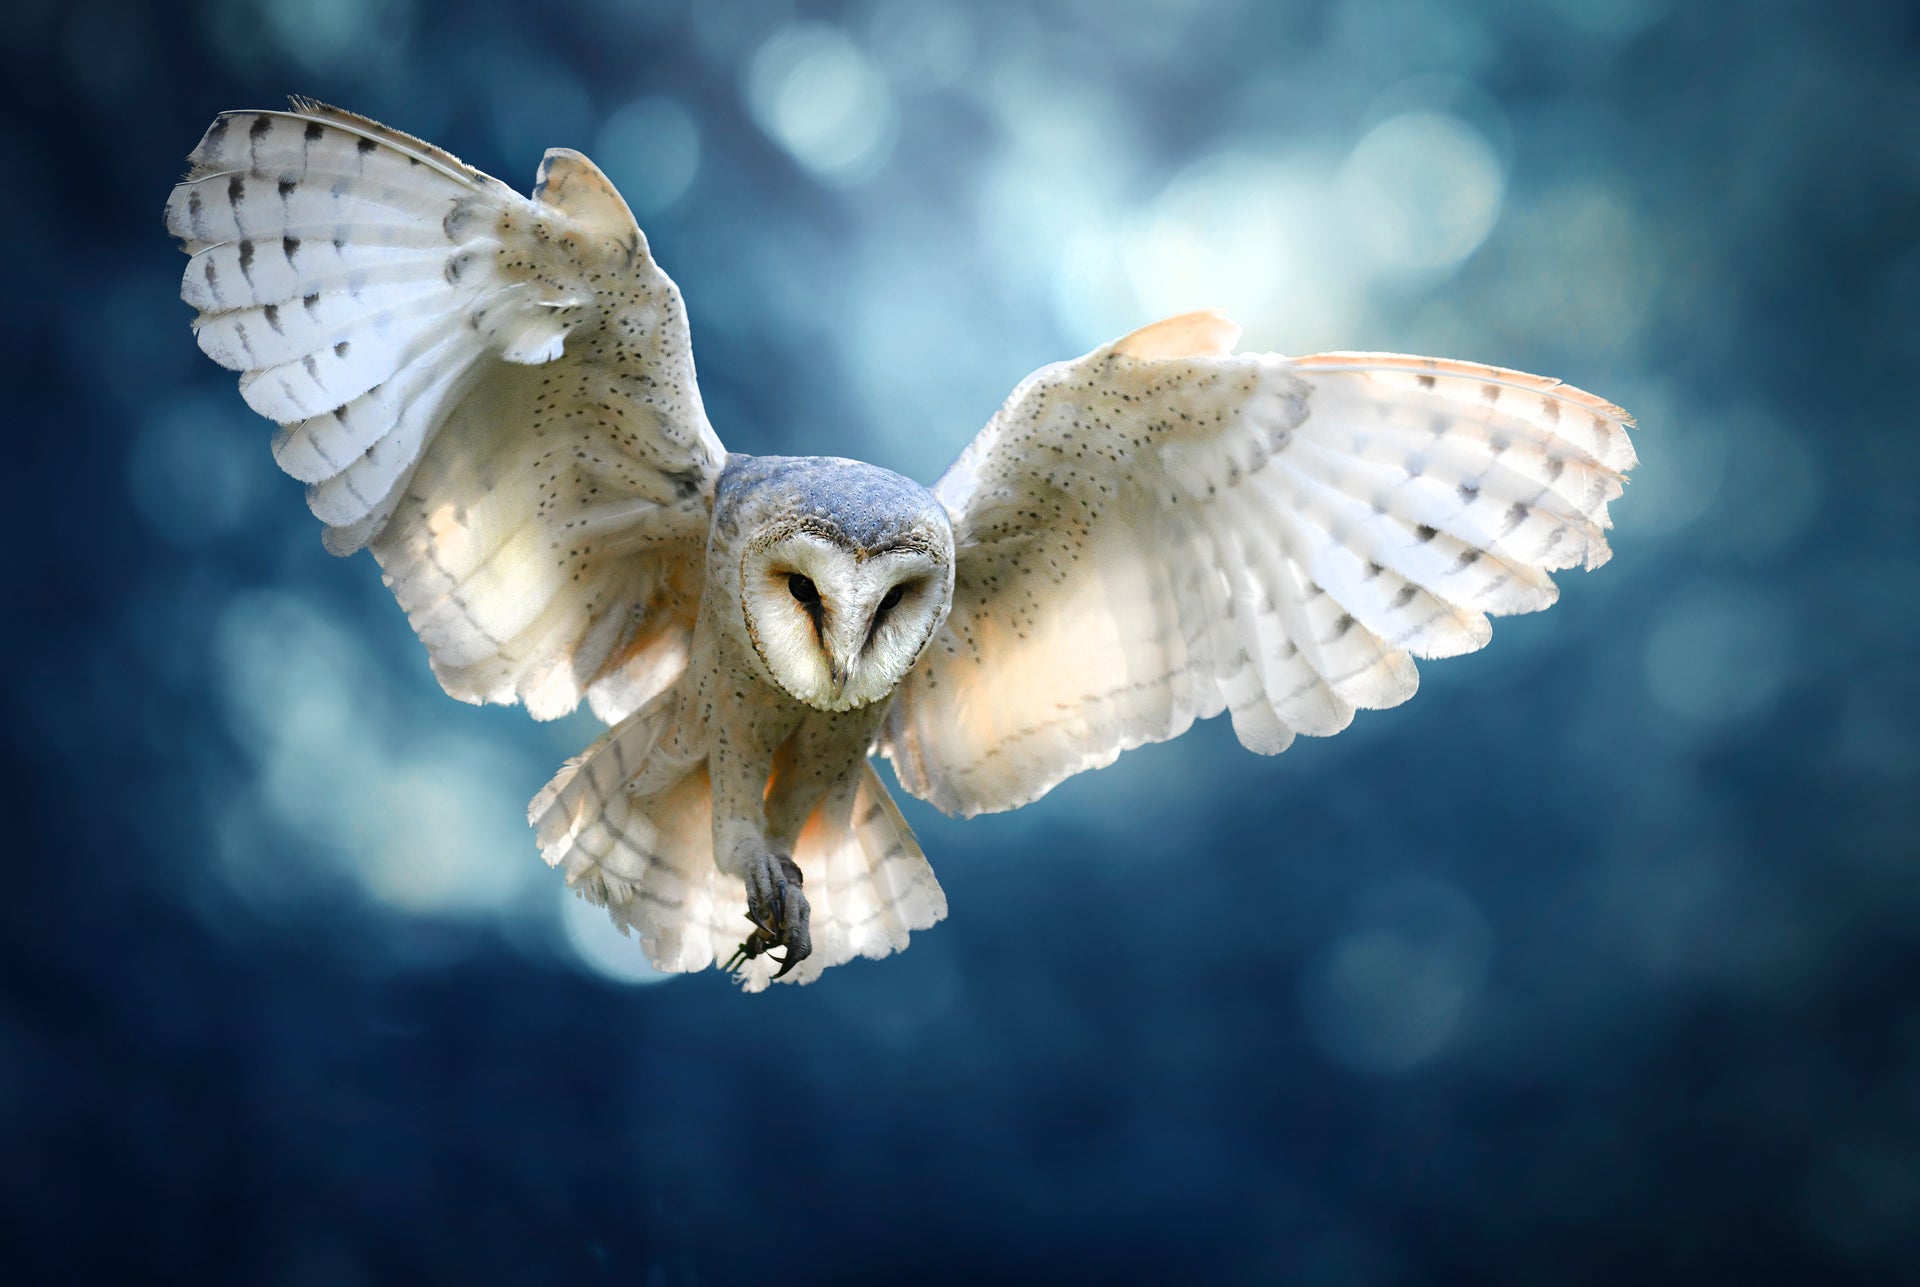 Owl in flight - Crosscountrycreations